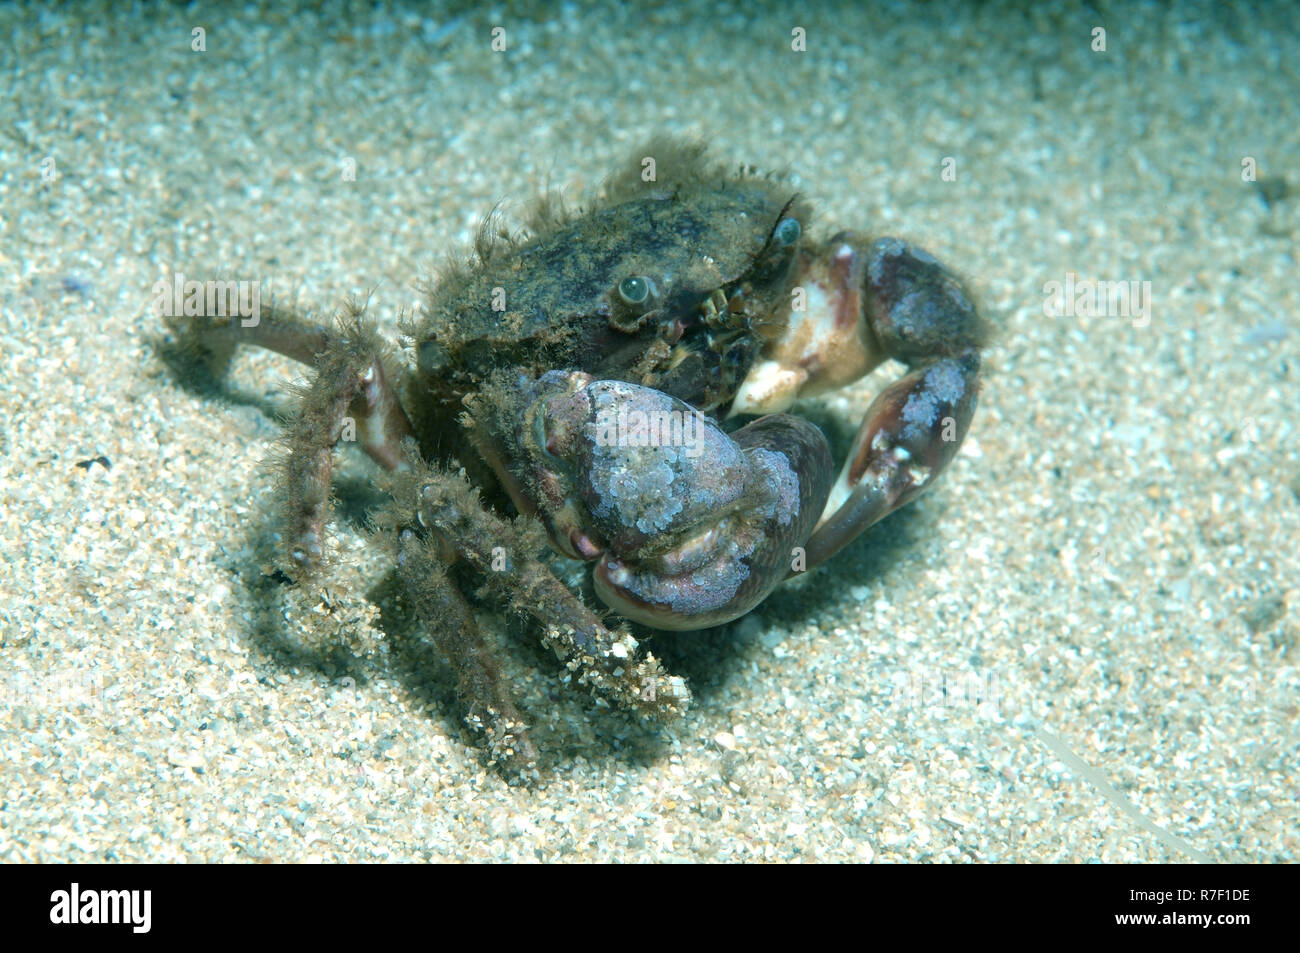 Bristly Crab or Hairy Crab (Pilumnus hirtellus), Black Sea, Crimea, Russia Stock Photo